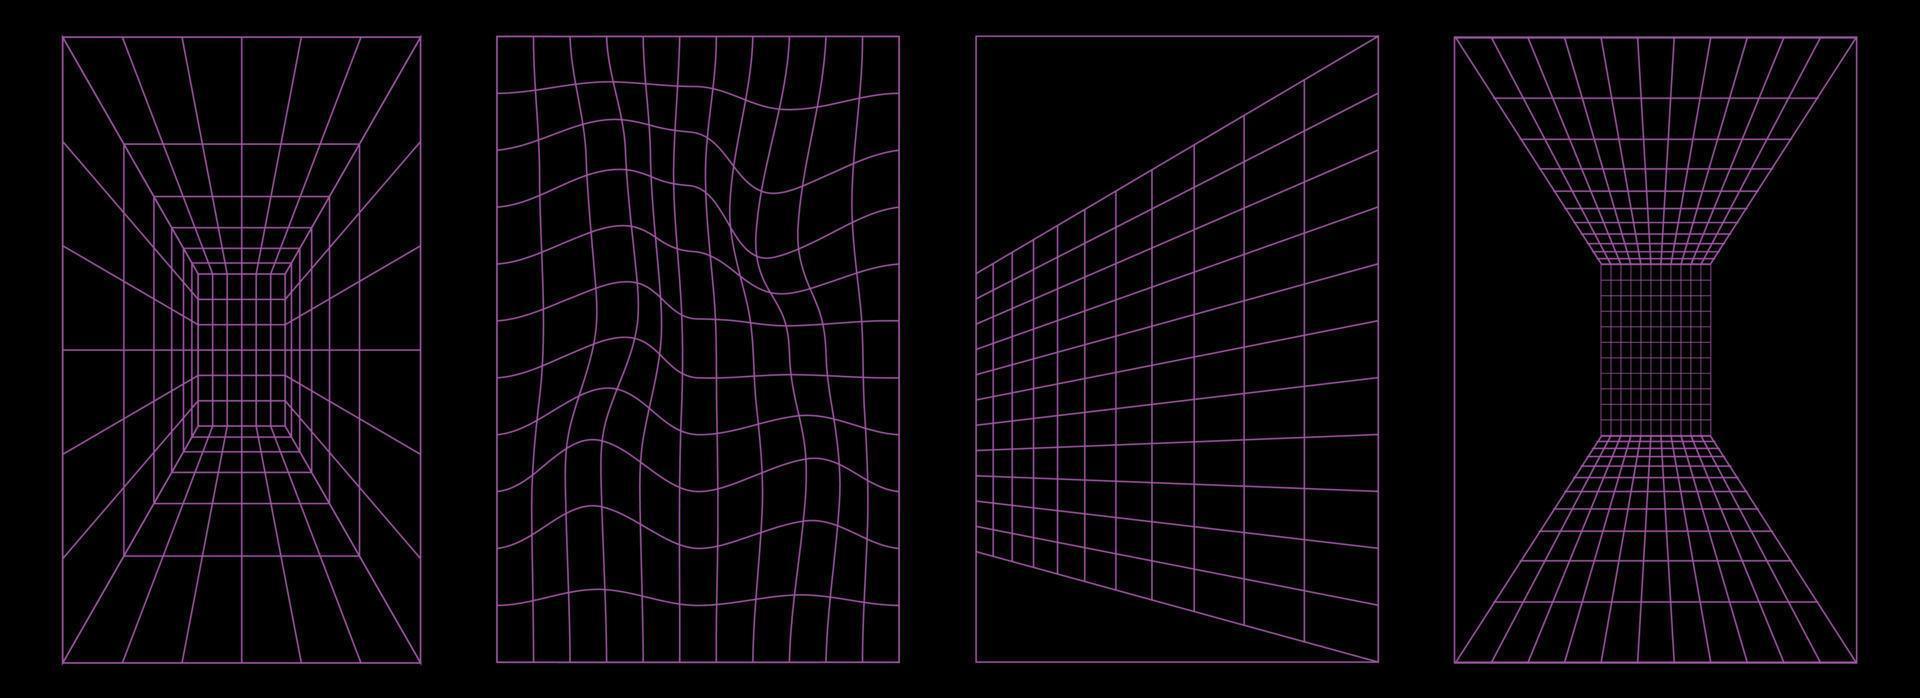 uppsättning av geometri trådmodell bakgrund former i neon lila Färg. abstrakt cyberpunk element, mönster, posters i trendig psychedelic rave y2k stil. vektor